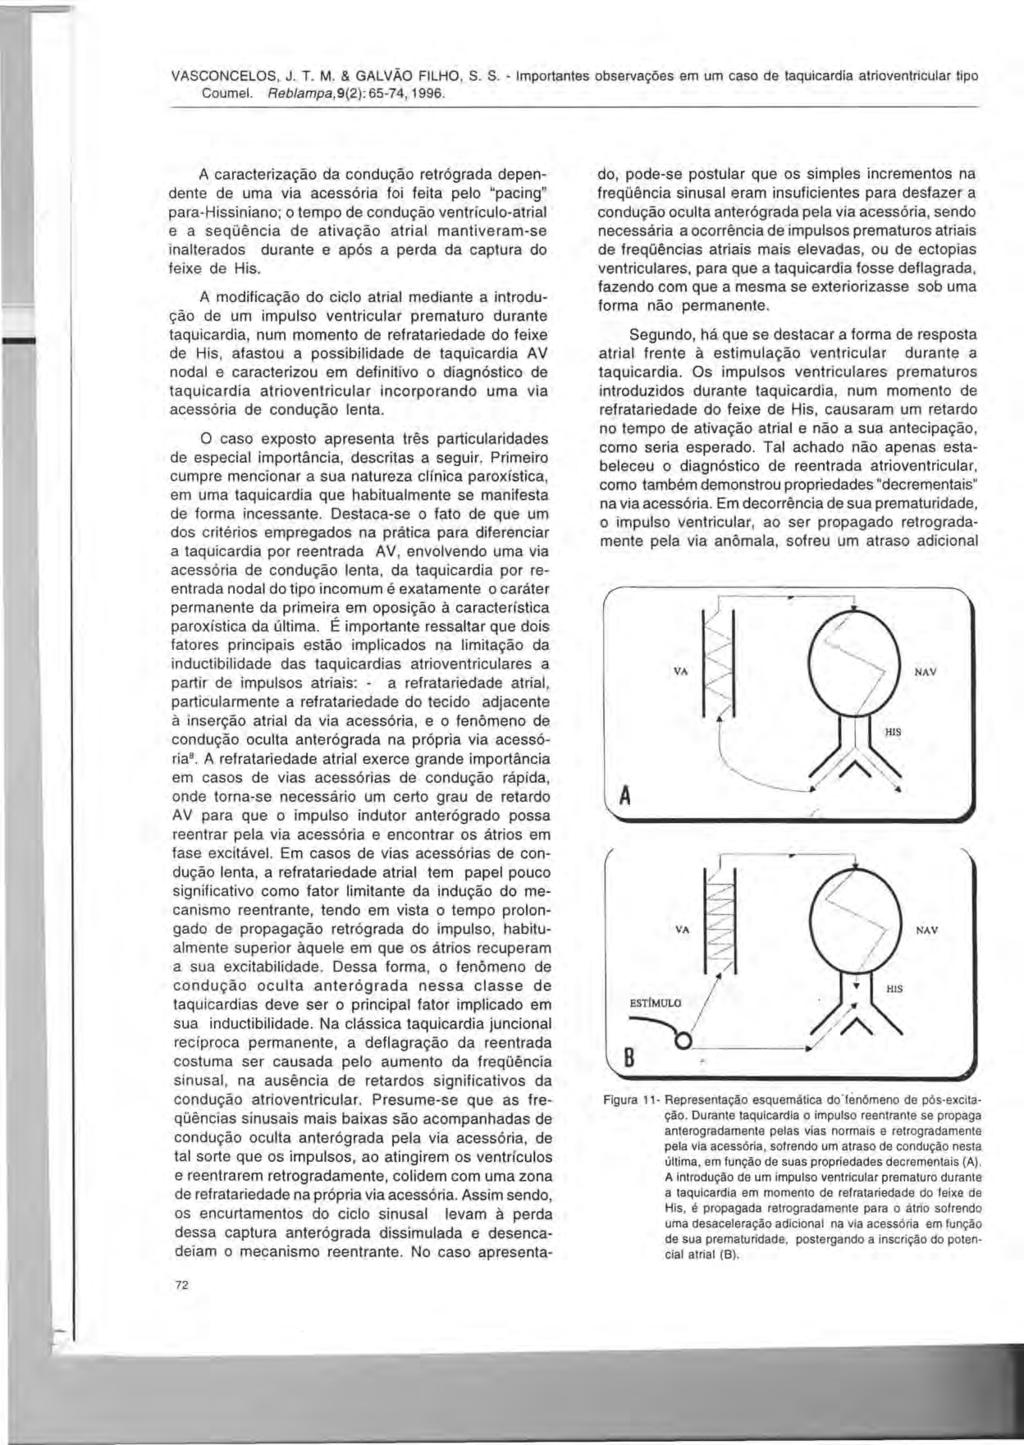 VASCONCELOS, J. T. M. & GALVAO FILHO, S. S. - Importantes observa90es em um caso de taquicardia atrioventricular tipo Coumel. Reb/amjJa, 9(2): 65-74, 1996.